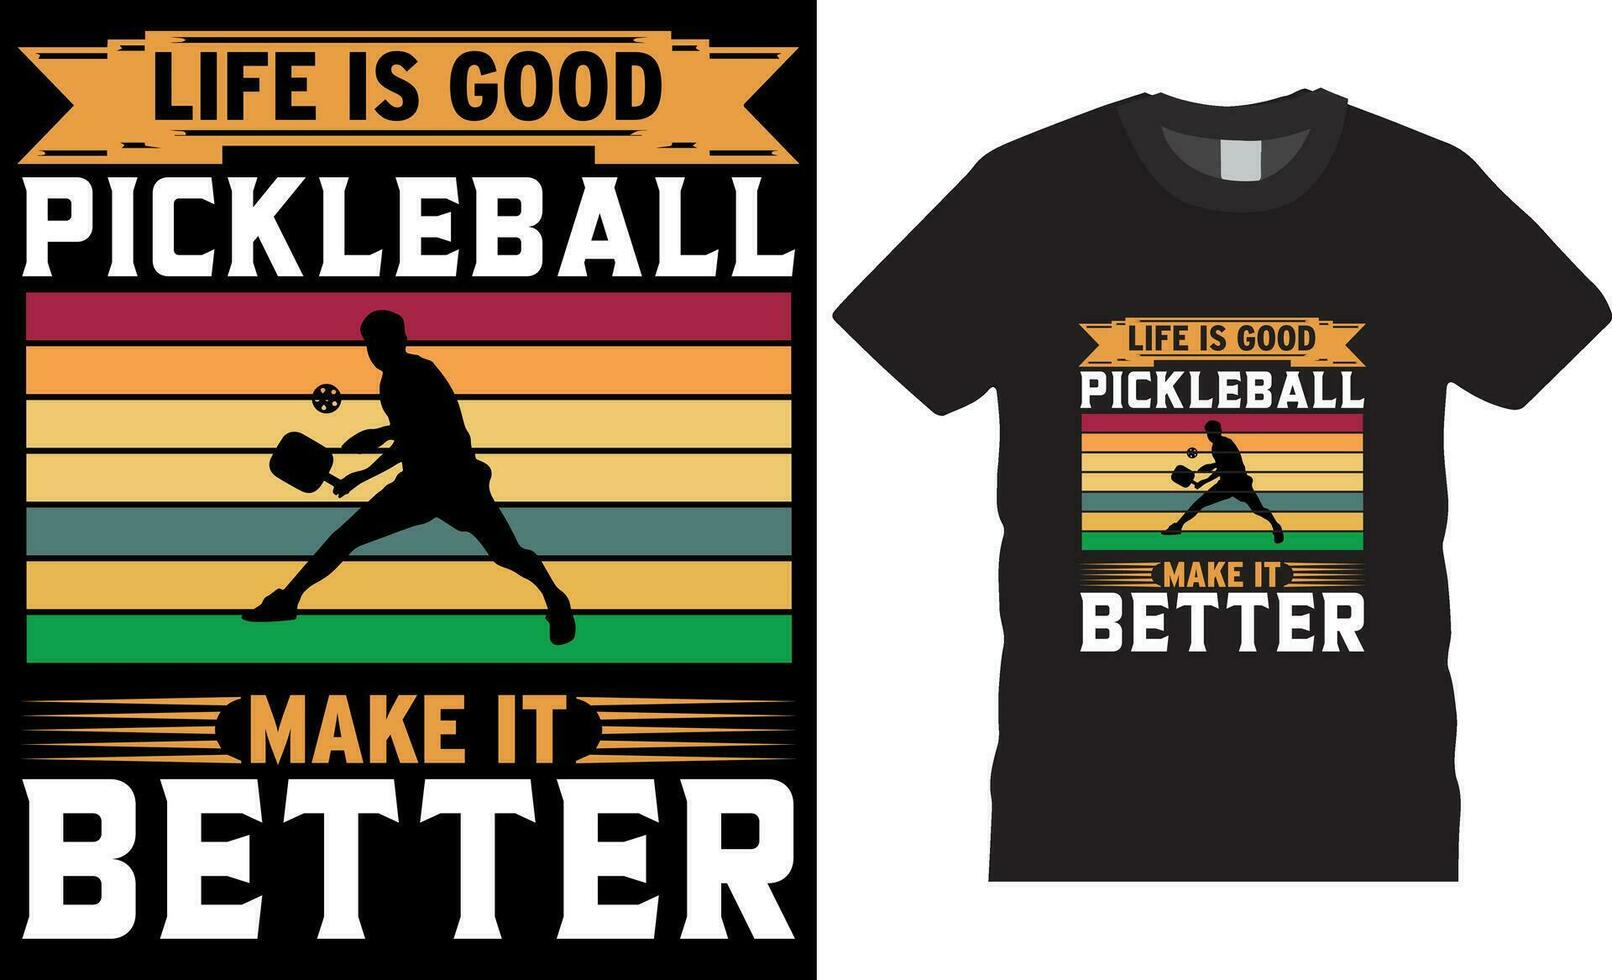 liv är Bra pickleball göra den bättre, ättikslag boll t-shirt design vektor skriva ut mall